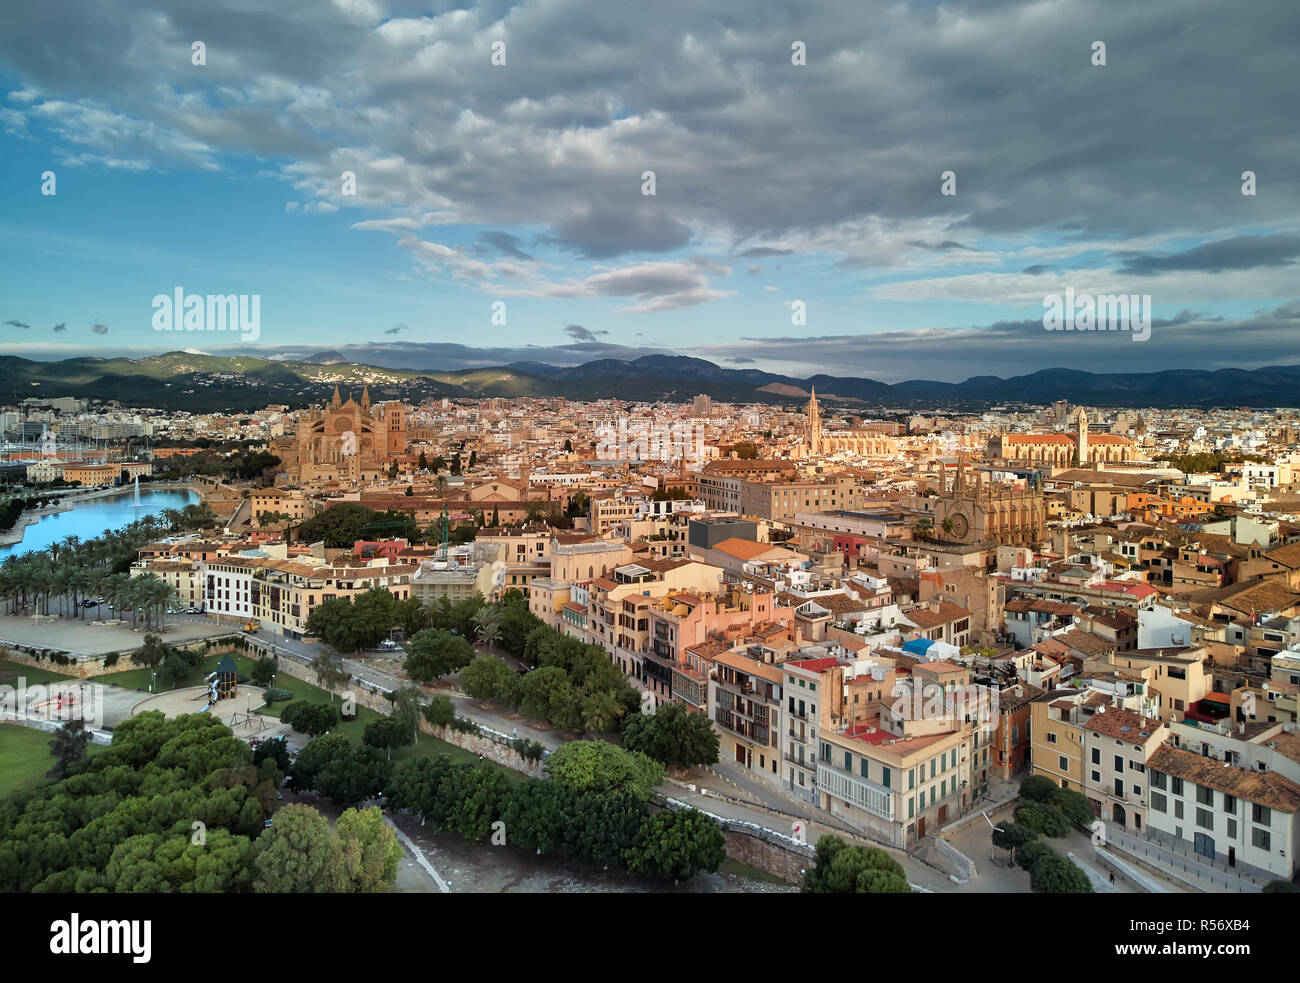 Antenna vista panoramica Maiorca cityscape townscape e la famosa cattedrale di Palma de Mallorca o Le Seu. Nuvoloso moody sky, valle di montagna. Spagna Foto Stock